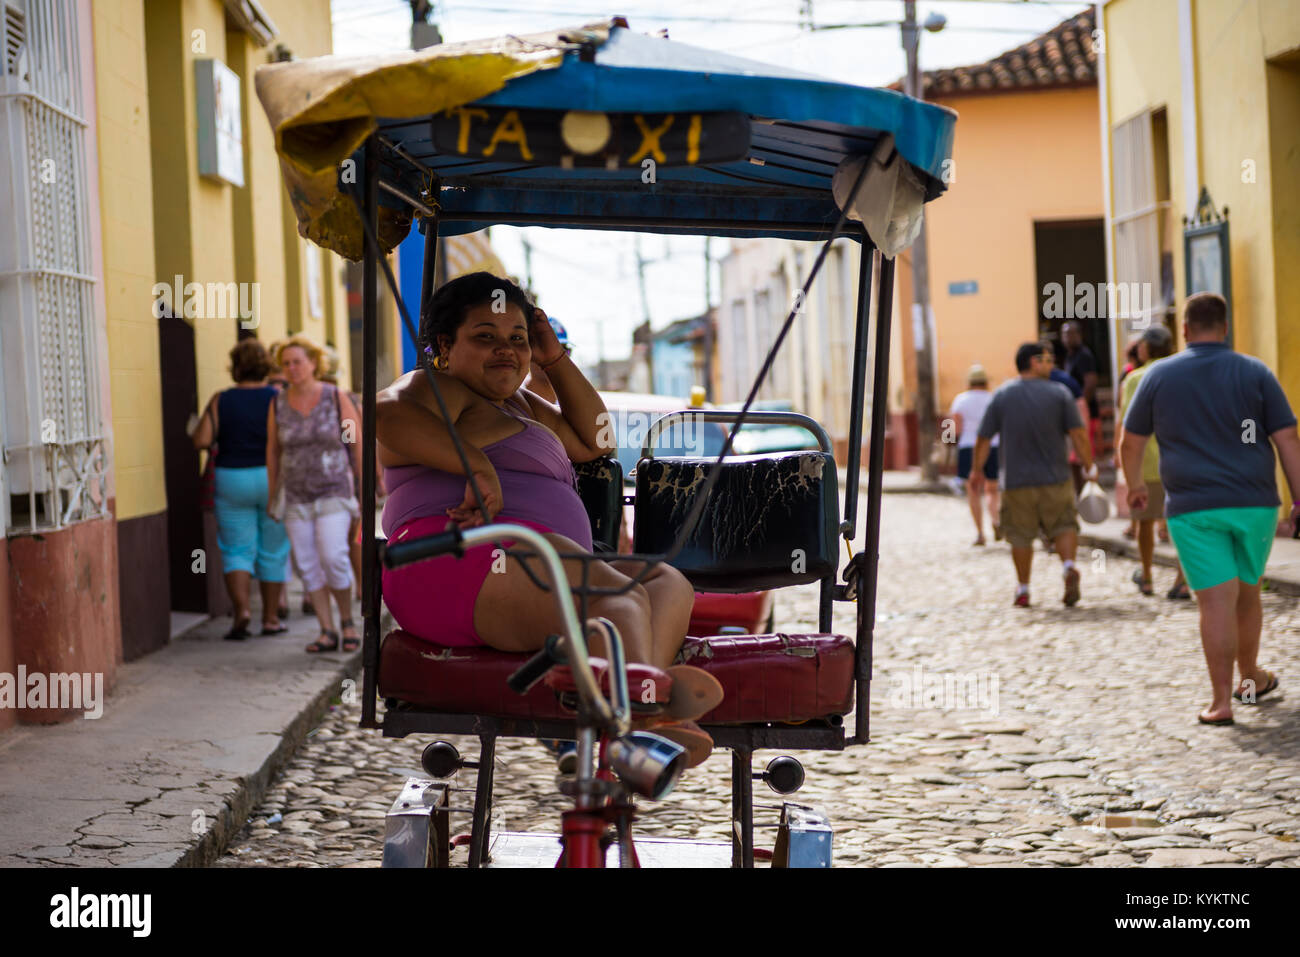 Trinidad, Cuba - 26 Novembre 2015: un sorridente donna cubana si siede in un pedale bike taxi mentre le persone stanno camminando per le strade dietro di lei Foto Stock